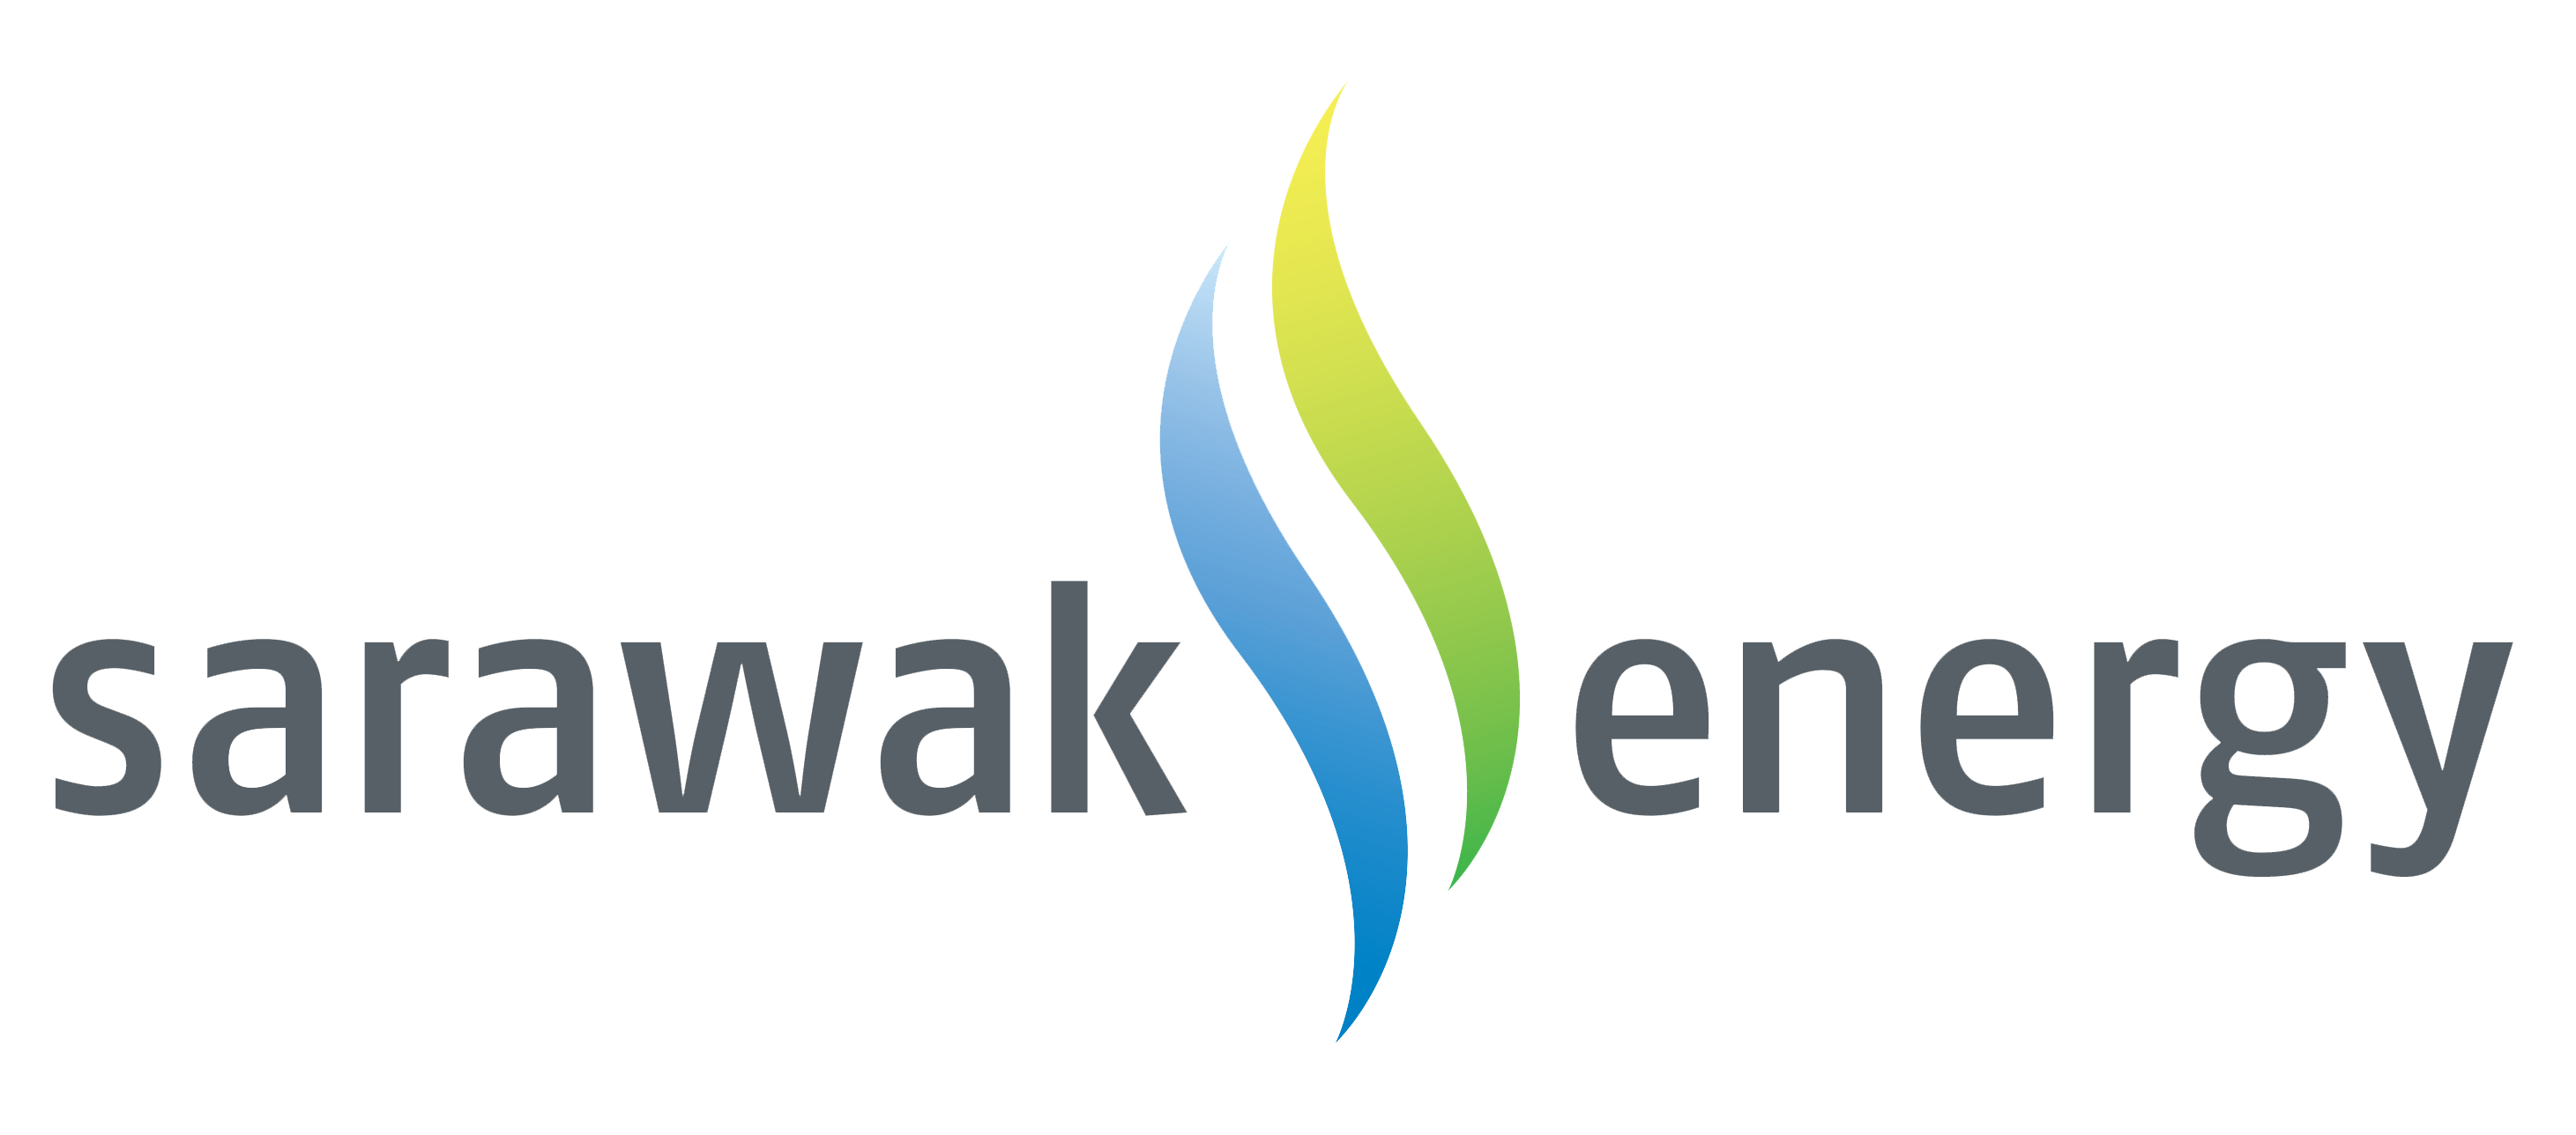 Sarawak_Energy_logo.png